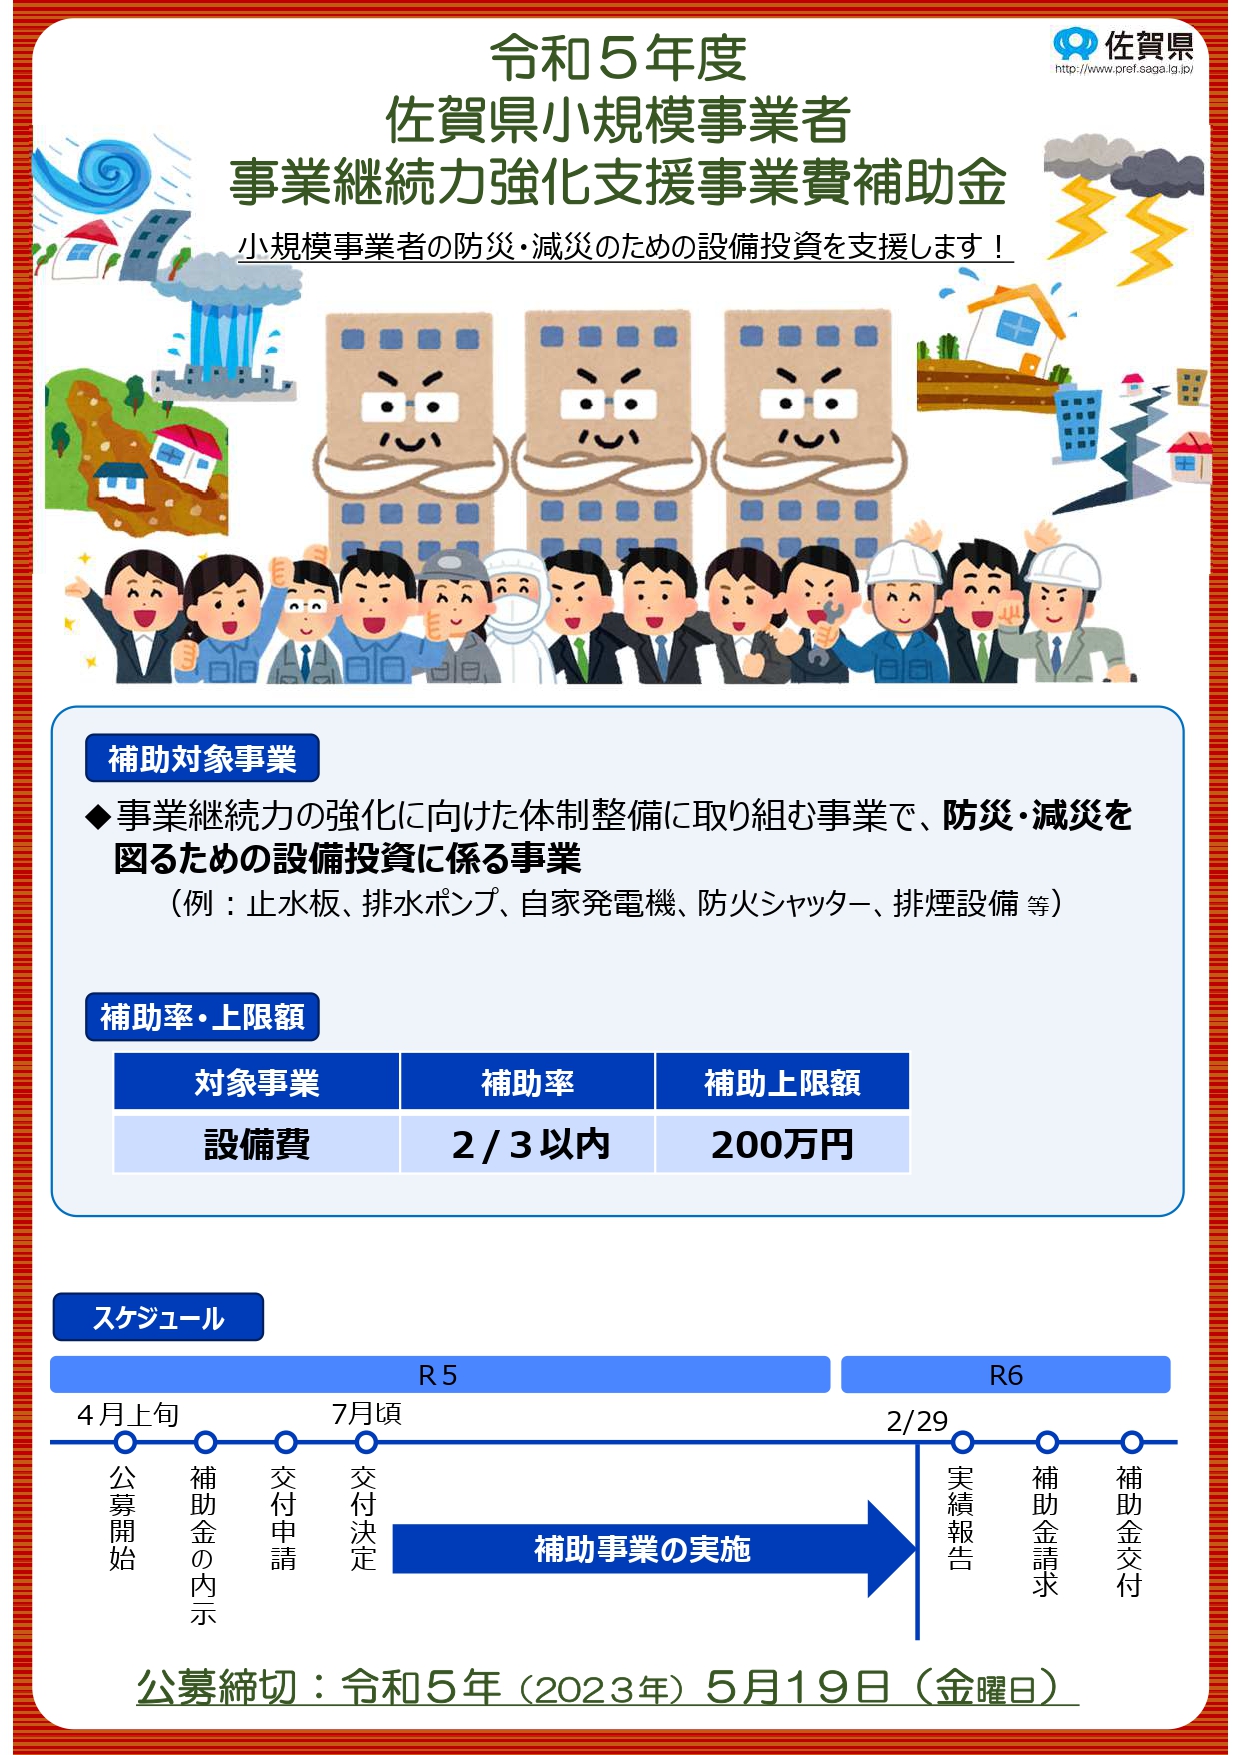 佐賀県小規模事業者事業継続力強化支援事業費補助金の公募のお知らせ